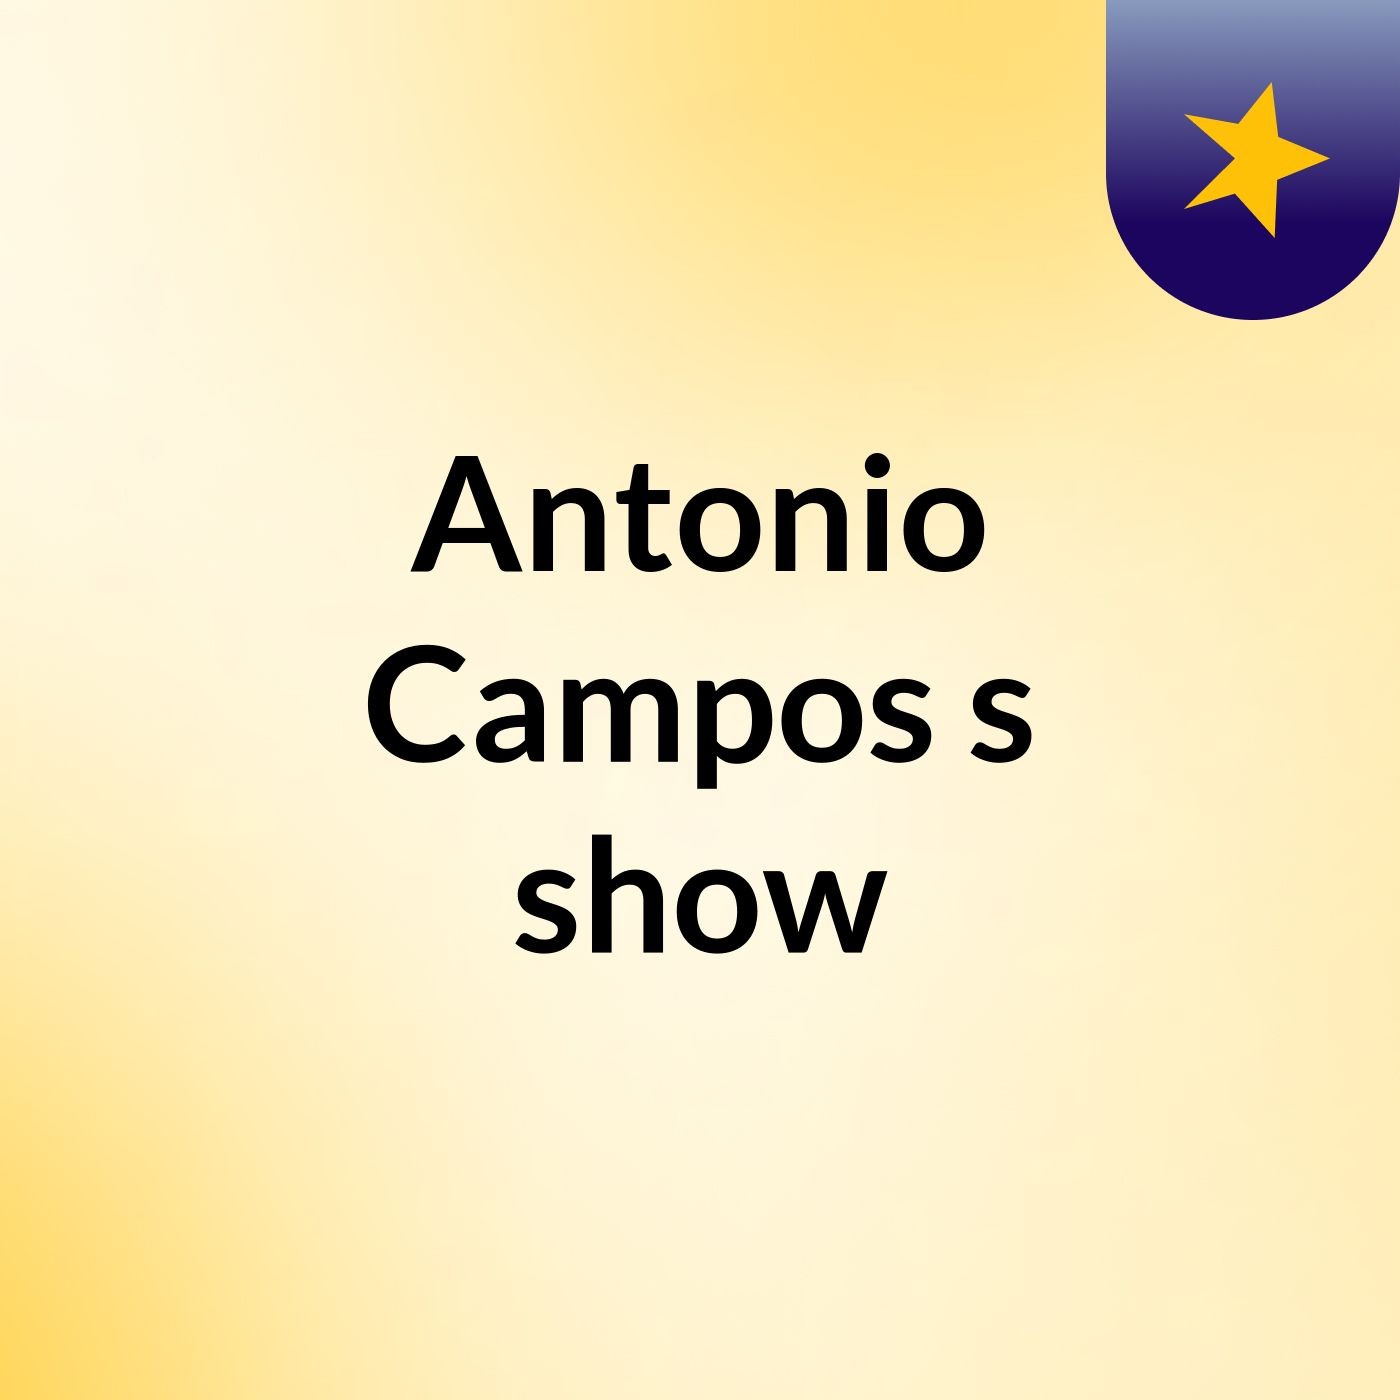 Antonio Campos's show